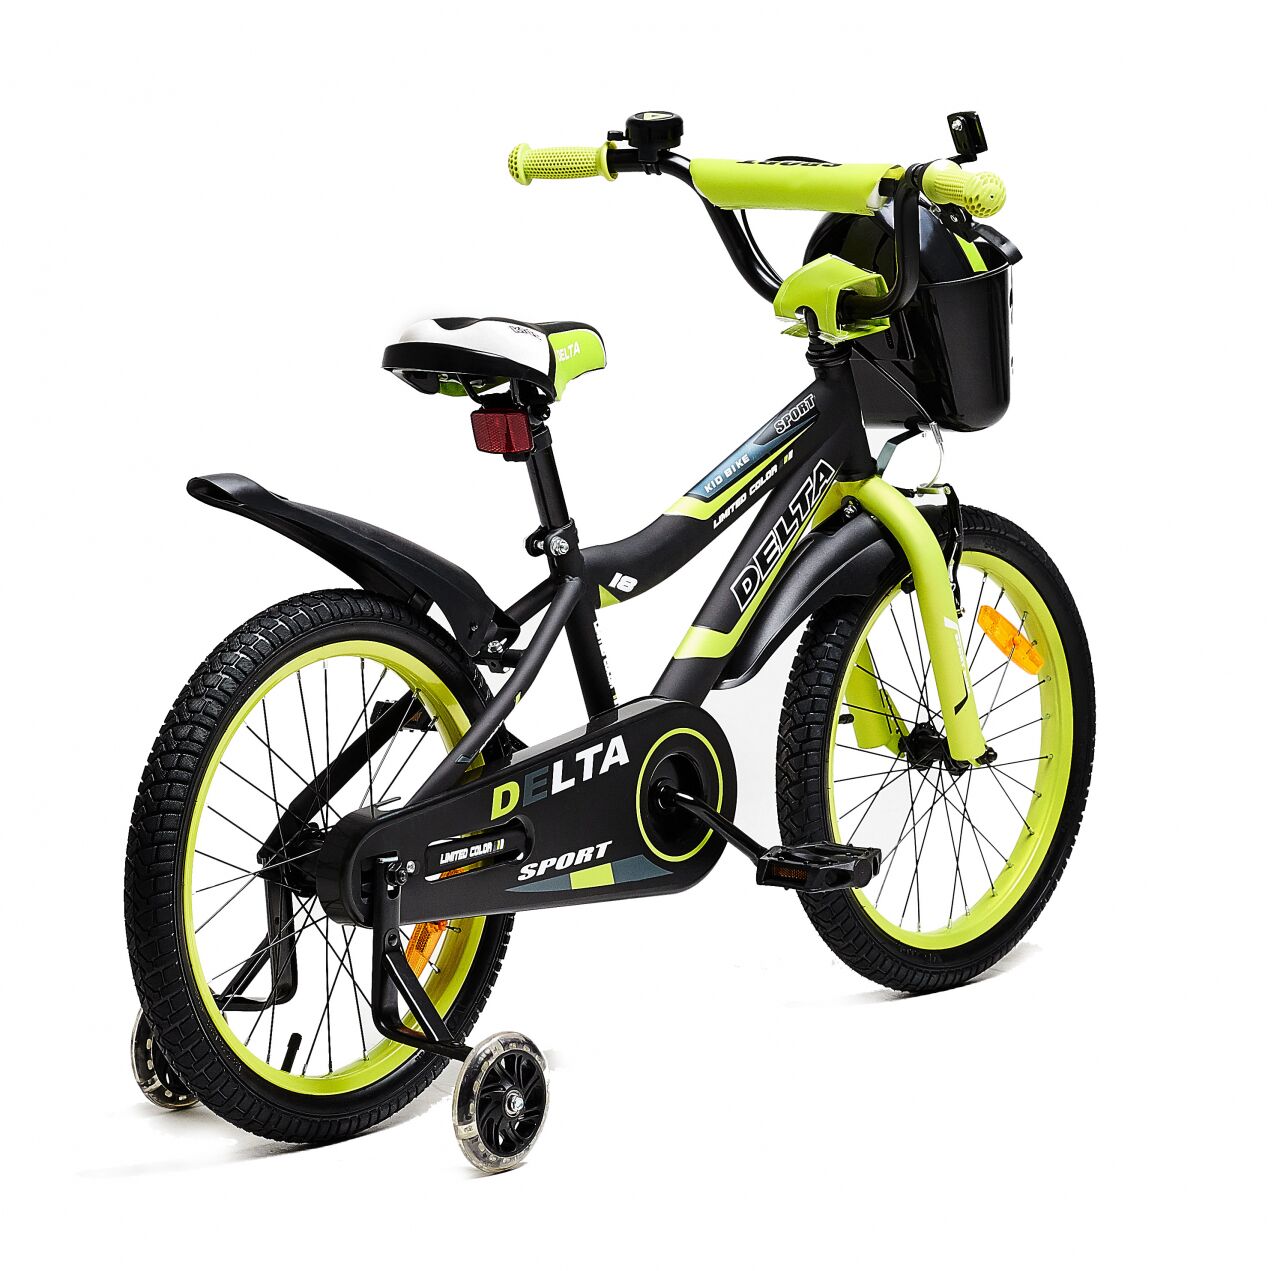 Детский велосипед DELTA Sport 20 (черный/зеленый, 2020)